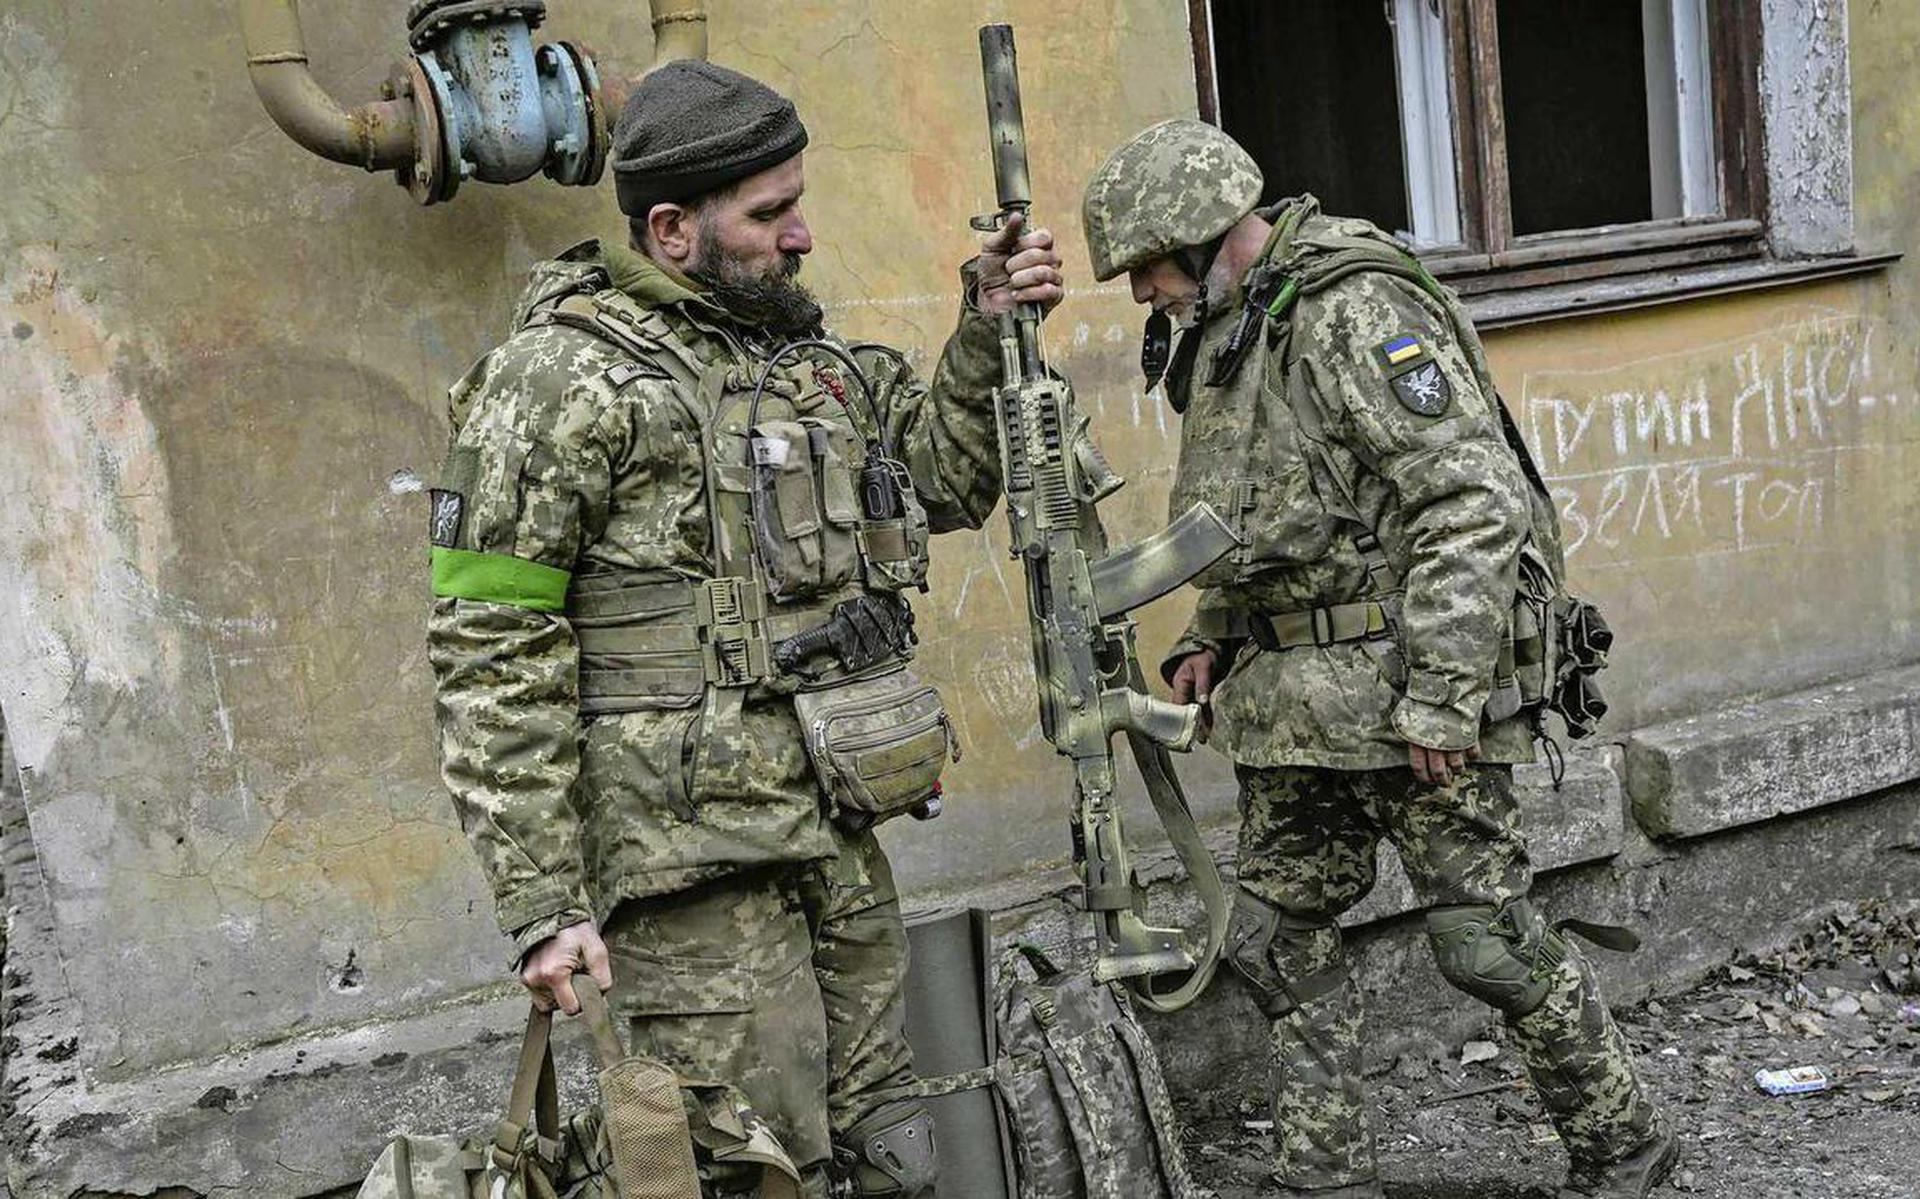 Het Oekraïense leger heeft zware verliezen geleden rond Bachmoet. Volgens een lokale commandant zijn alleen verse troepen onvoldoende om succesvol in de tegenaanval te gaan en heeft Kiev vooral een tekort aan in de strijd geharde militairen.